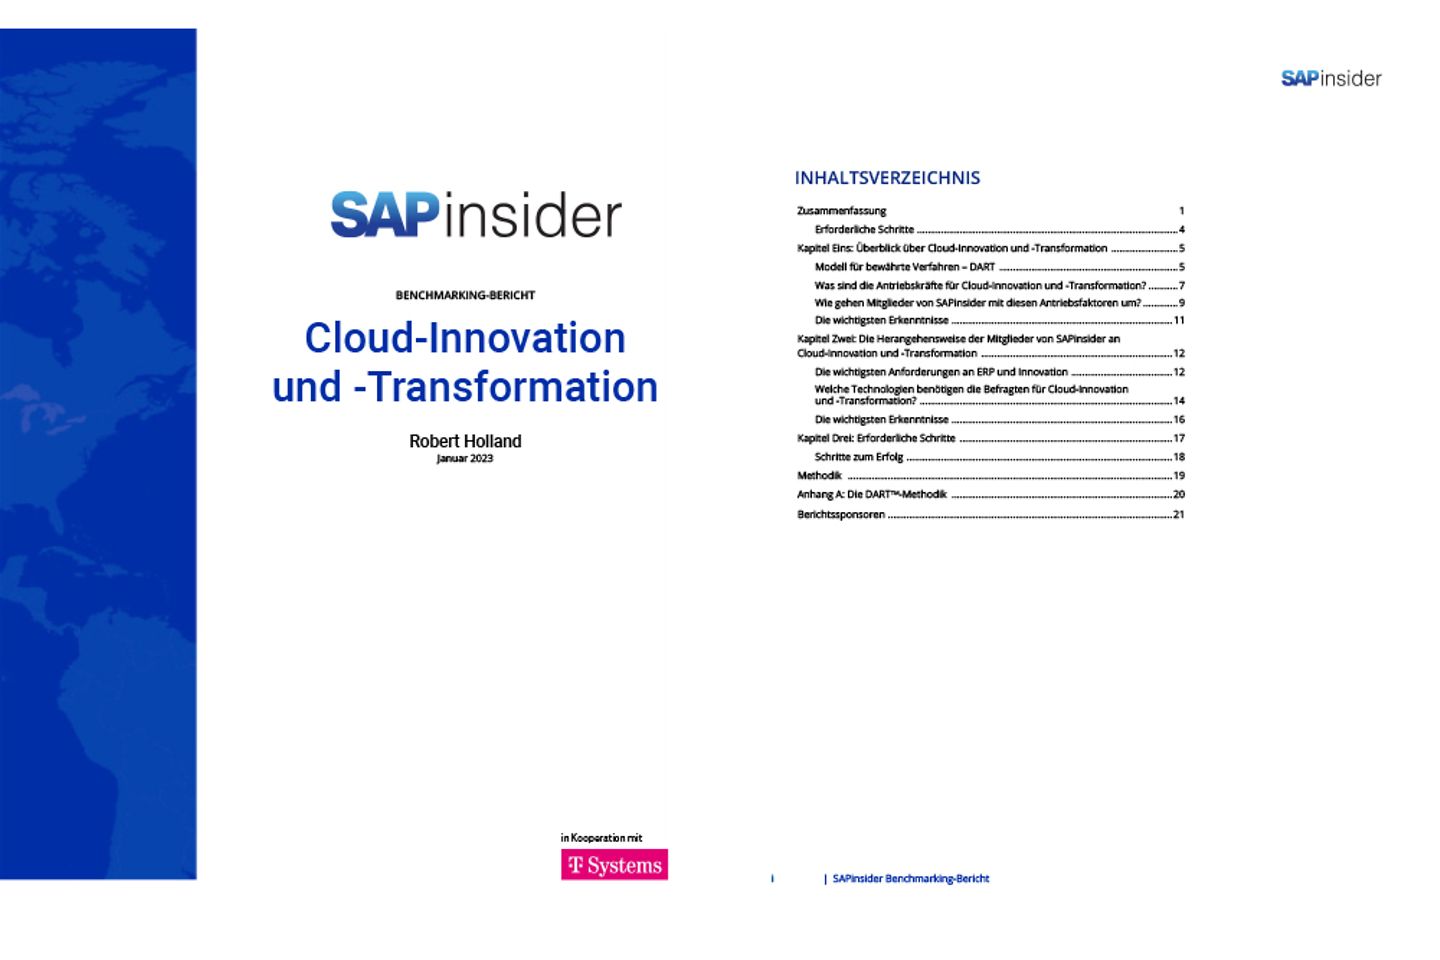 Portada y siguiente página del informe como captura de pantalla: SAP e innovación en el cloud